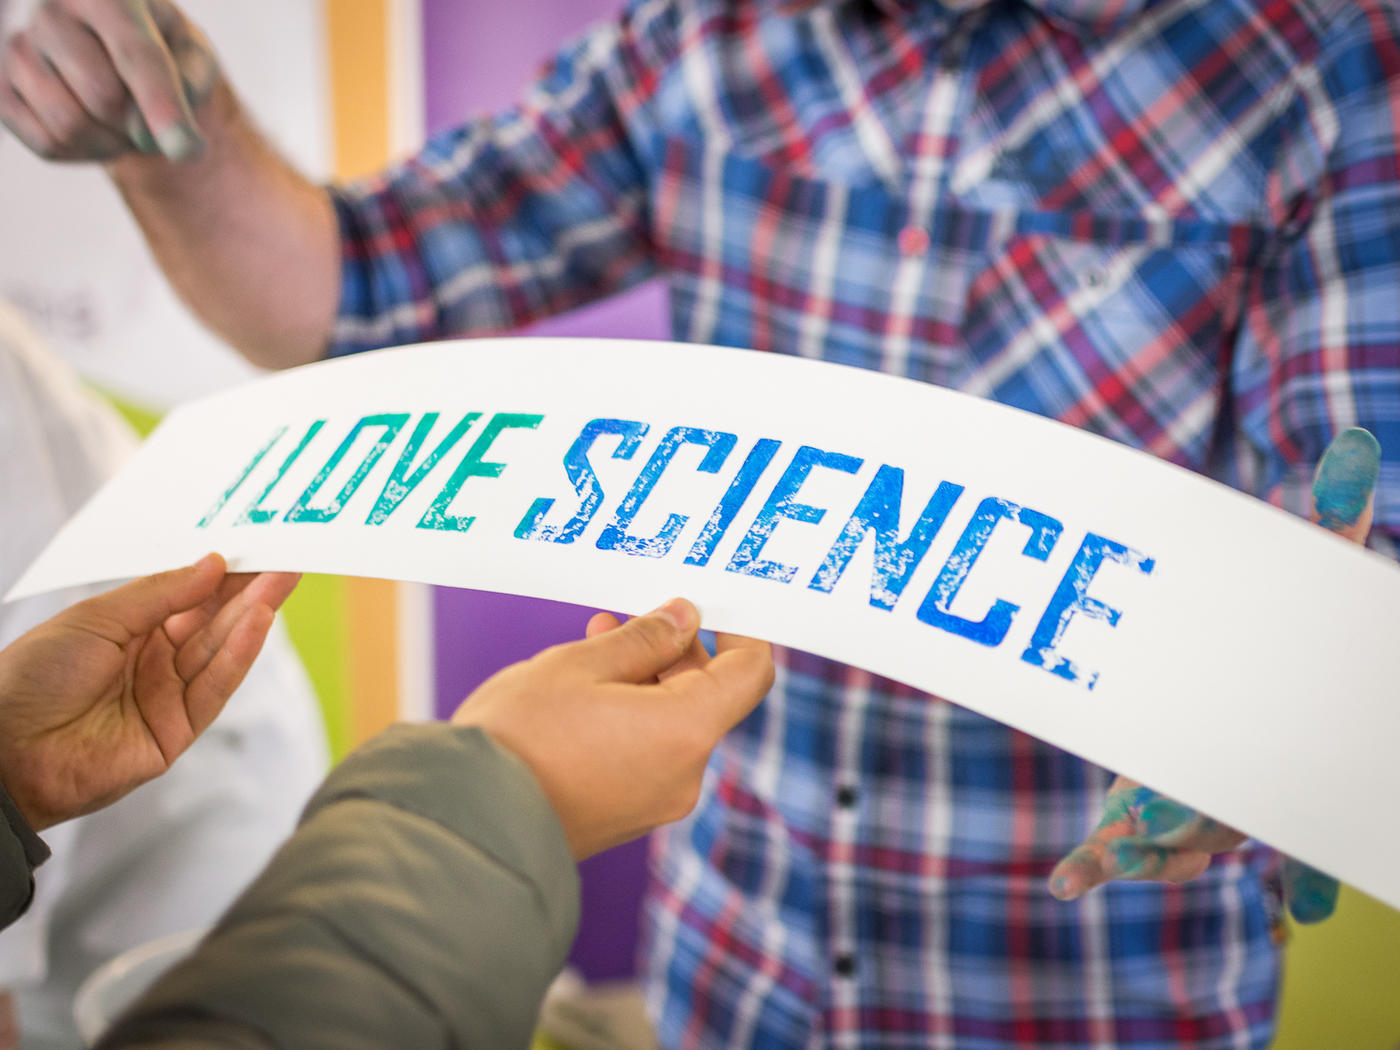 Auf dem Bild ist eine Person in einem karierten Hemd zu sehen, die auf einen Schriftzug "I love science" zeigt. 